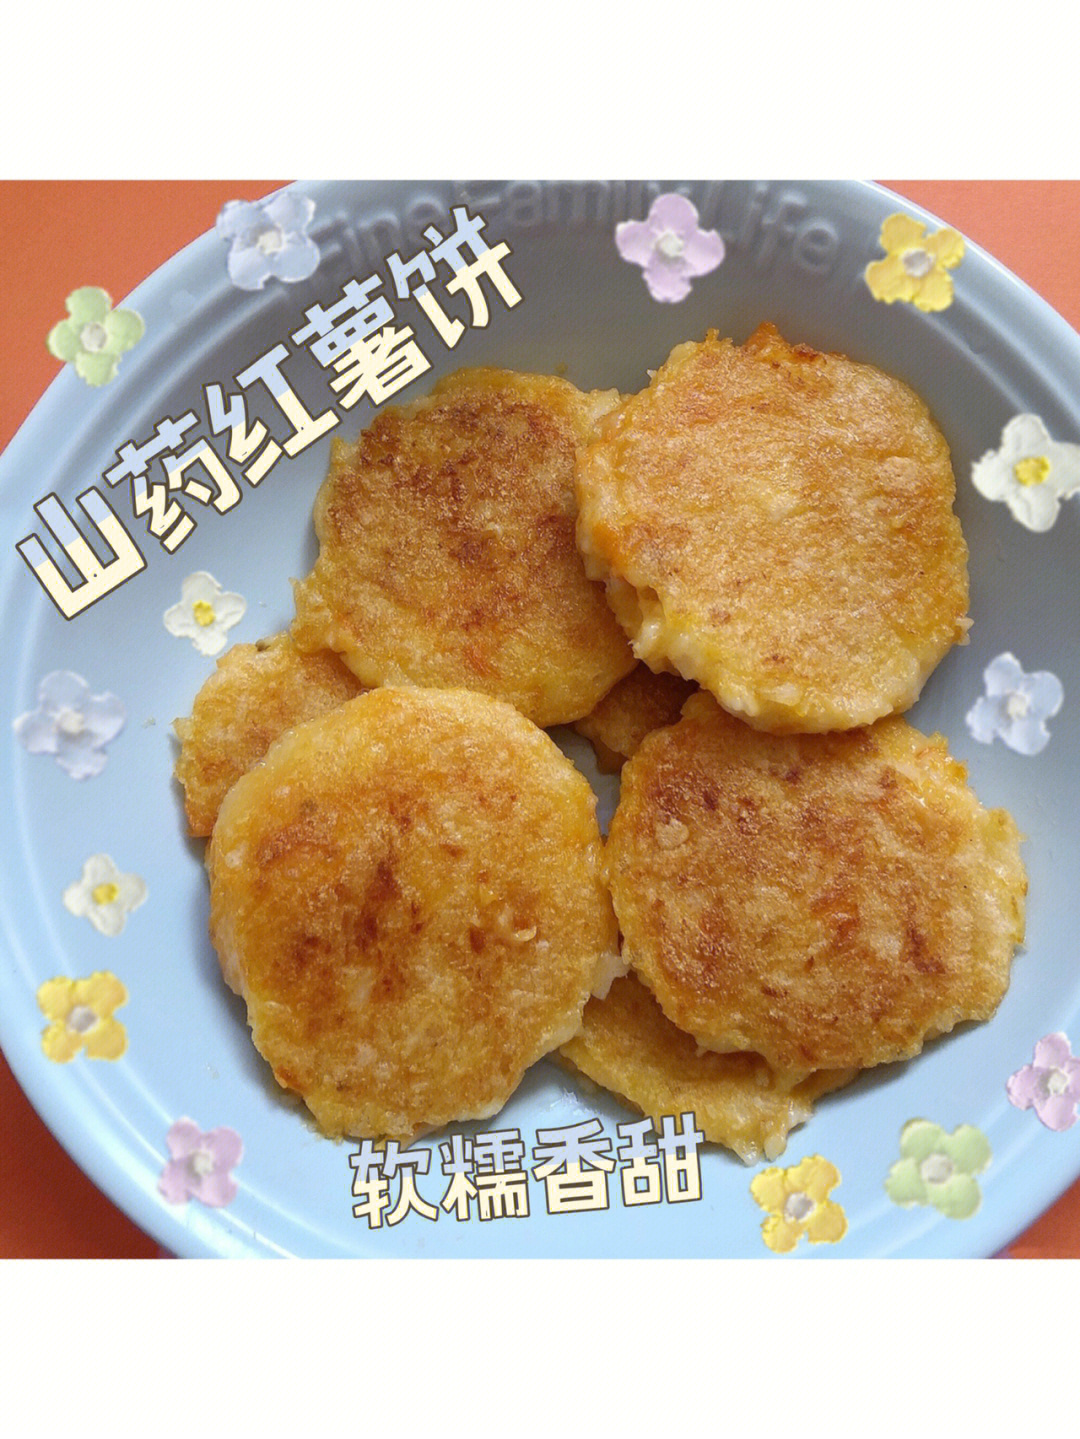 糯叽叽香甜浓郁山药红薯饼